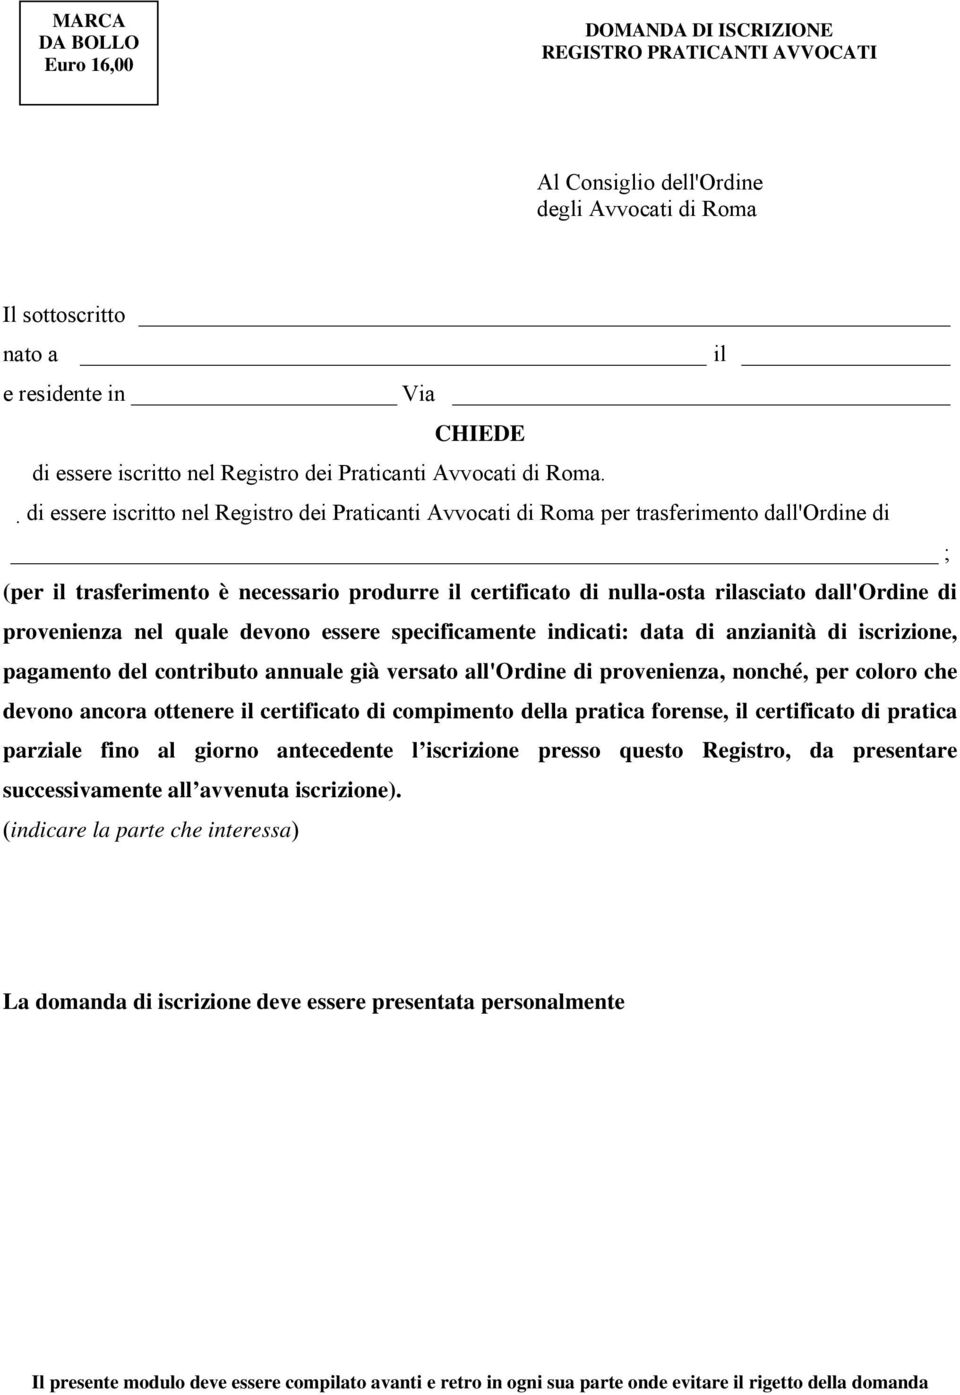 di essere iscritto nel Registro dei Praticanti Avvocati di Roma per trasferimento dall'ordine di ; (per il trasferimento è necessario produrre il certificato di nulla-osta rilasciato dall'ordine di